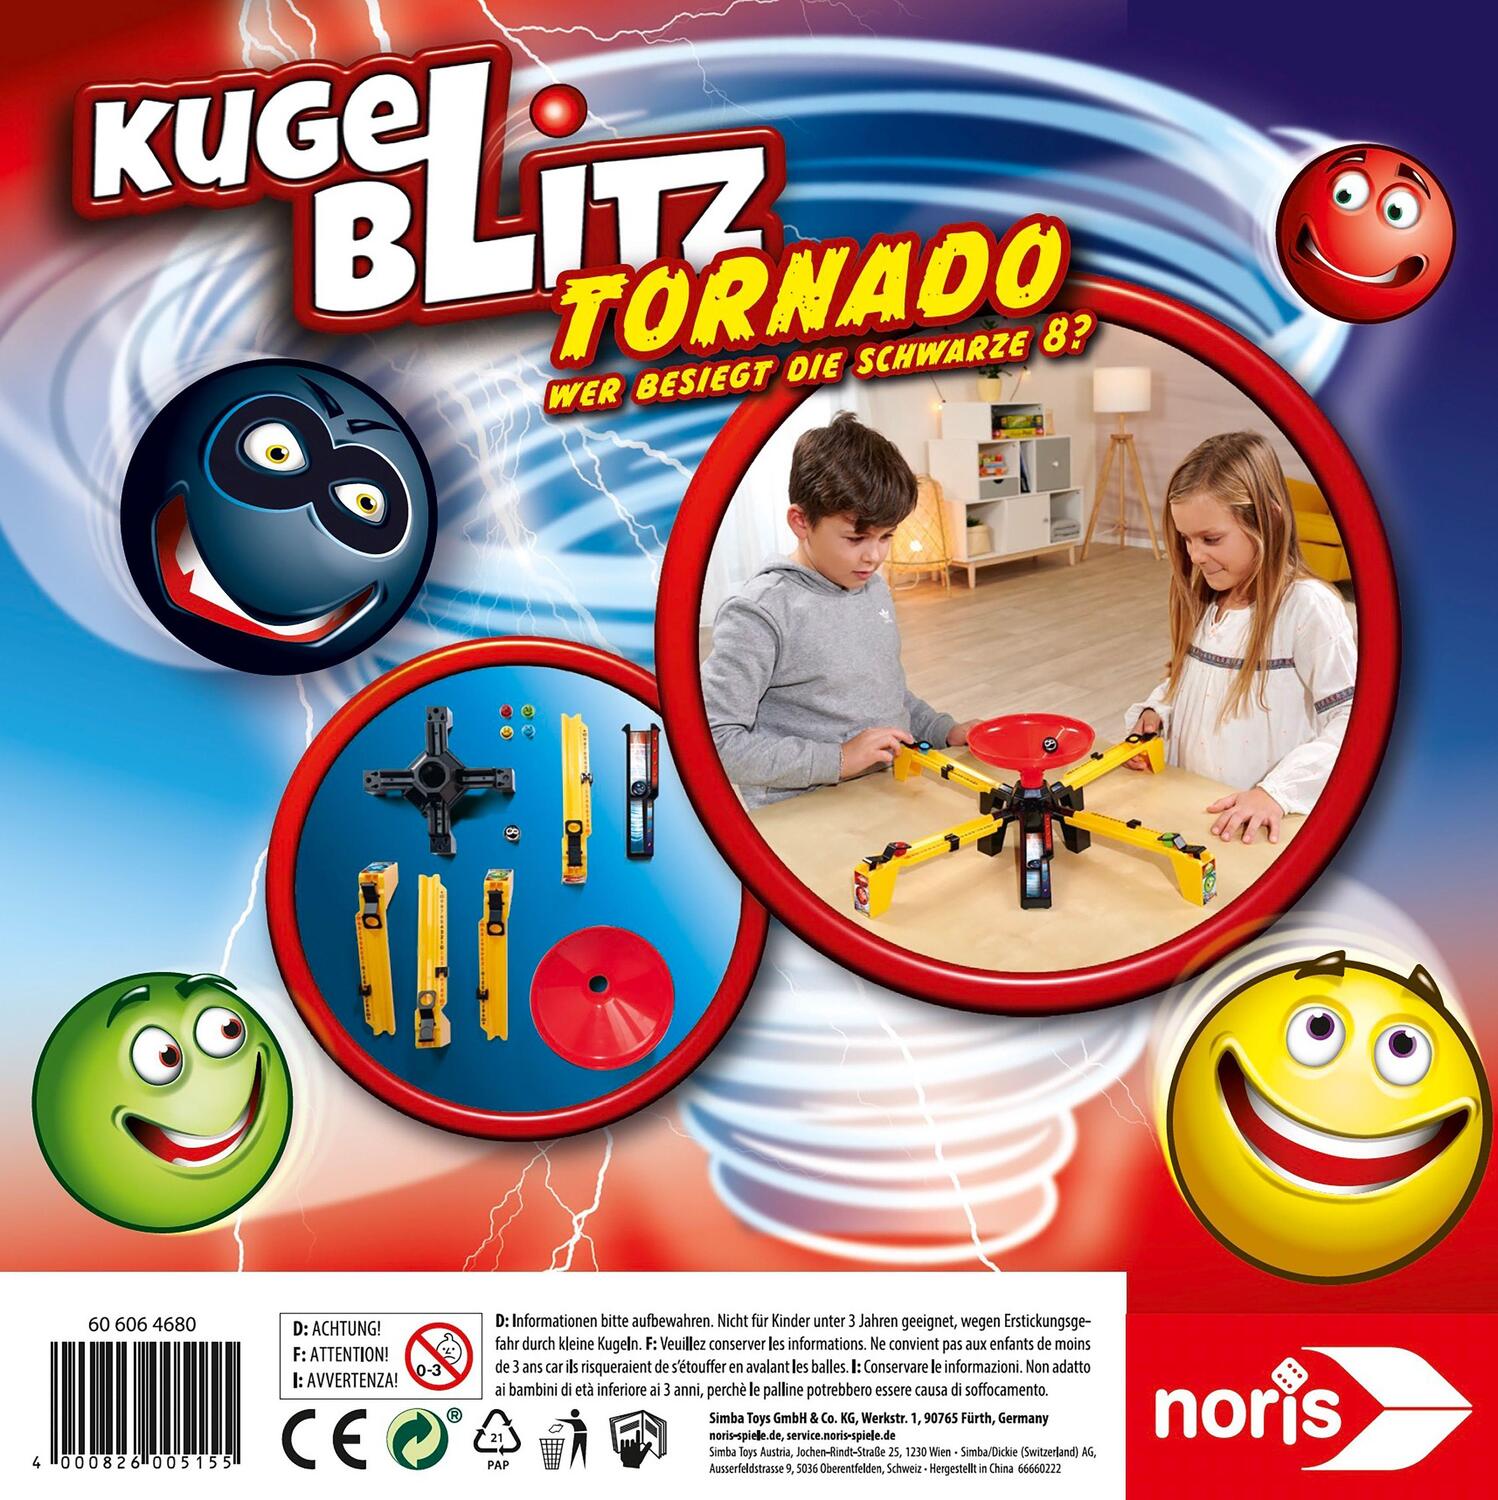 Bild: 4000826005155 | Kugelblitz Tornado | Noris | Spiel | Kinderspiel | Deutsch | 2022